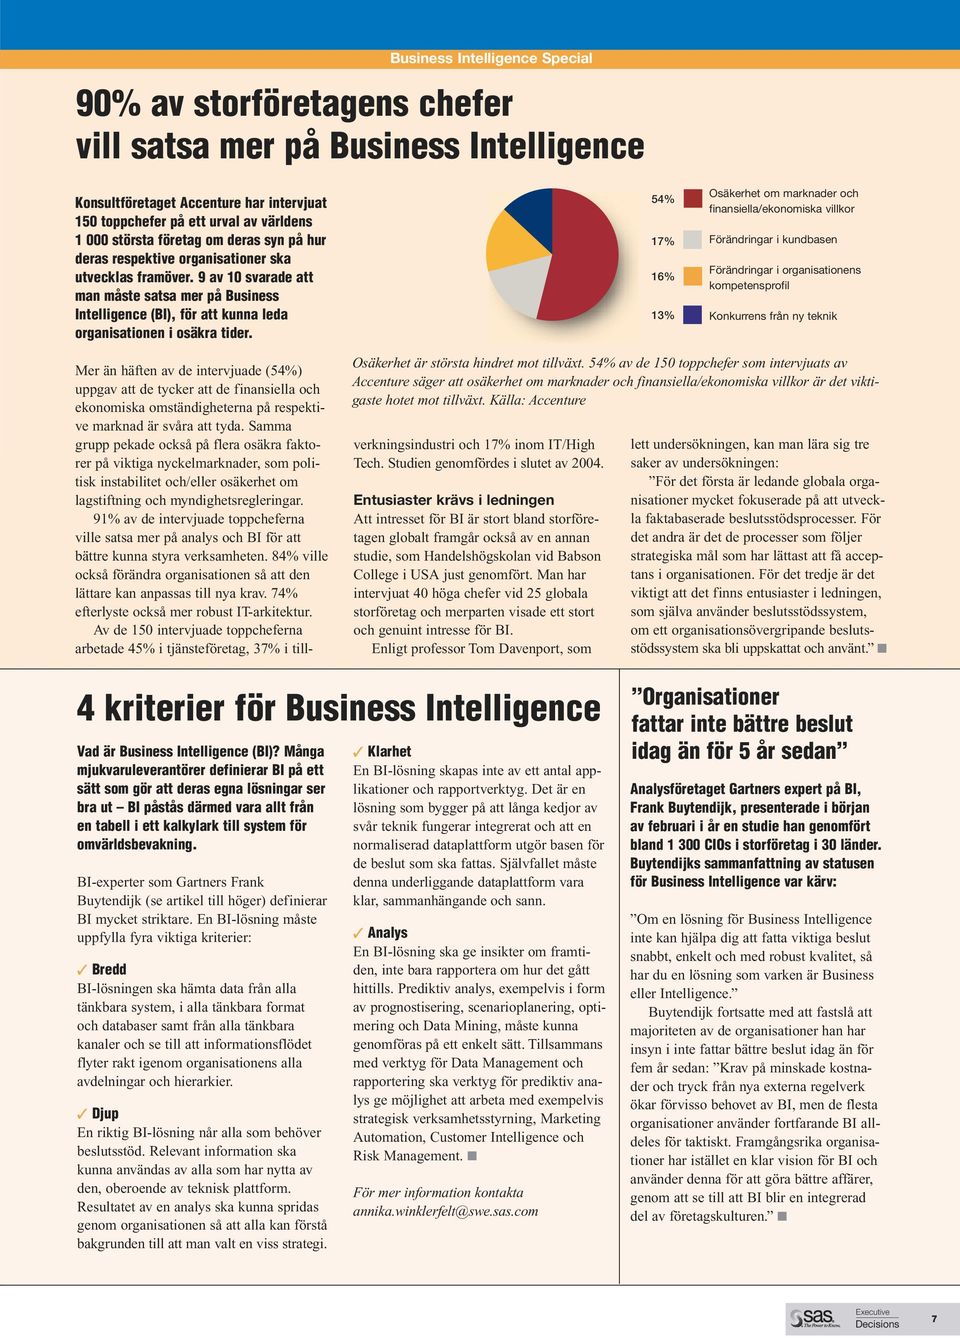 Business Intelligence Special 90% av storföretagens chefer vill satsa mer på Business Intelligence 54% 17% 16% 13% Osäkerhet om marknader och finansiella/ekonomiska villkor Förändringar i kundbasen